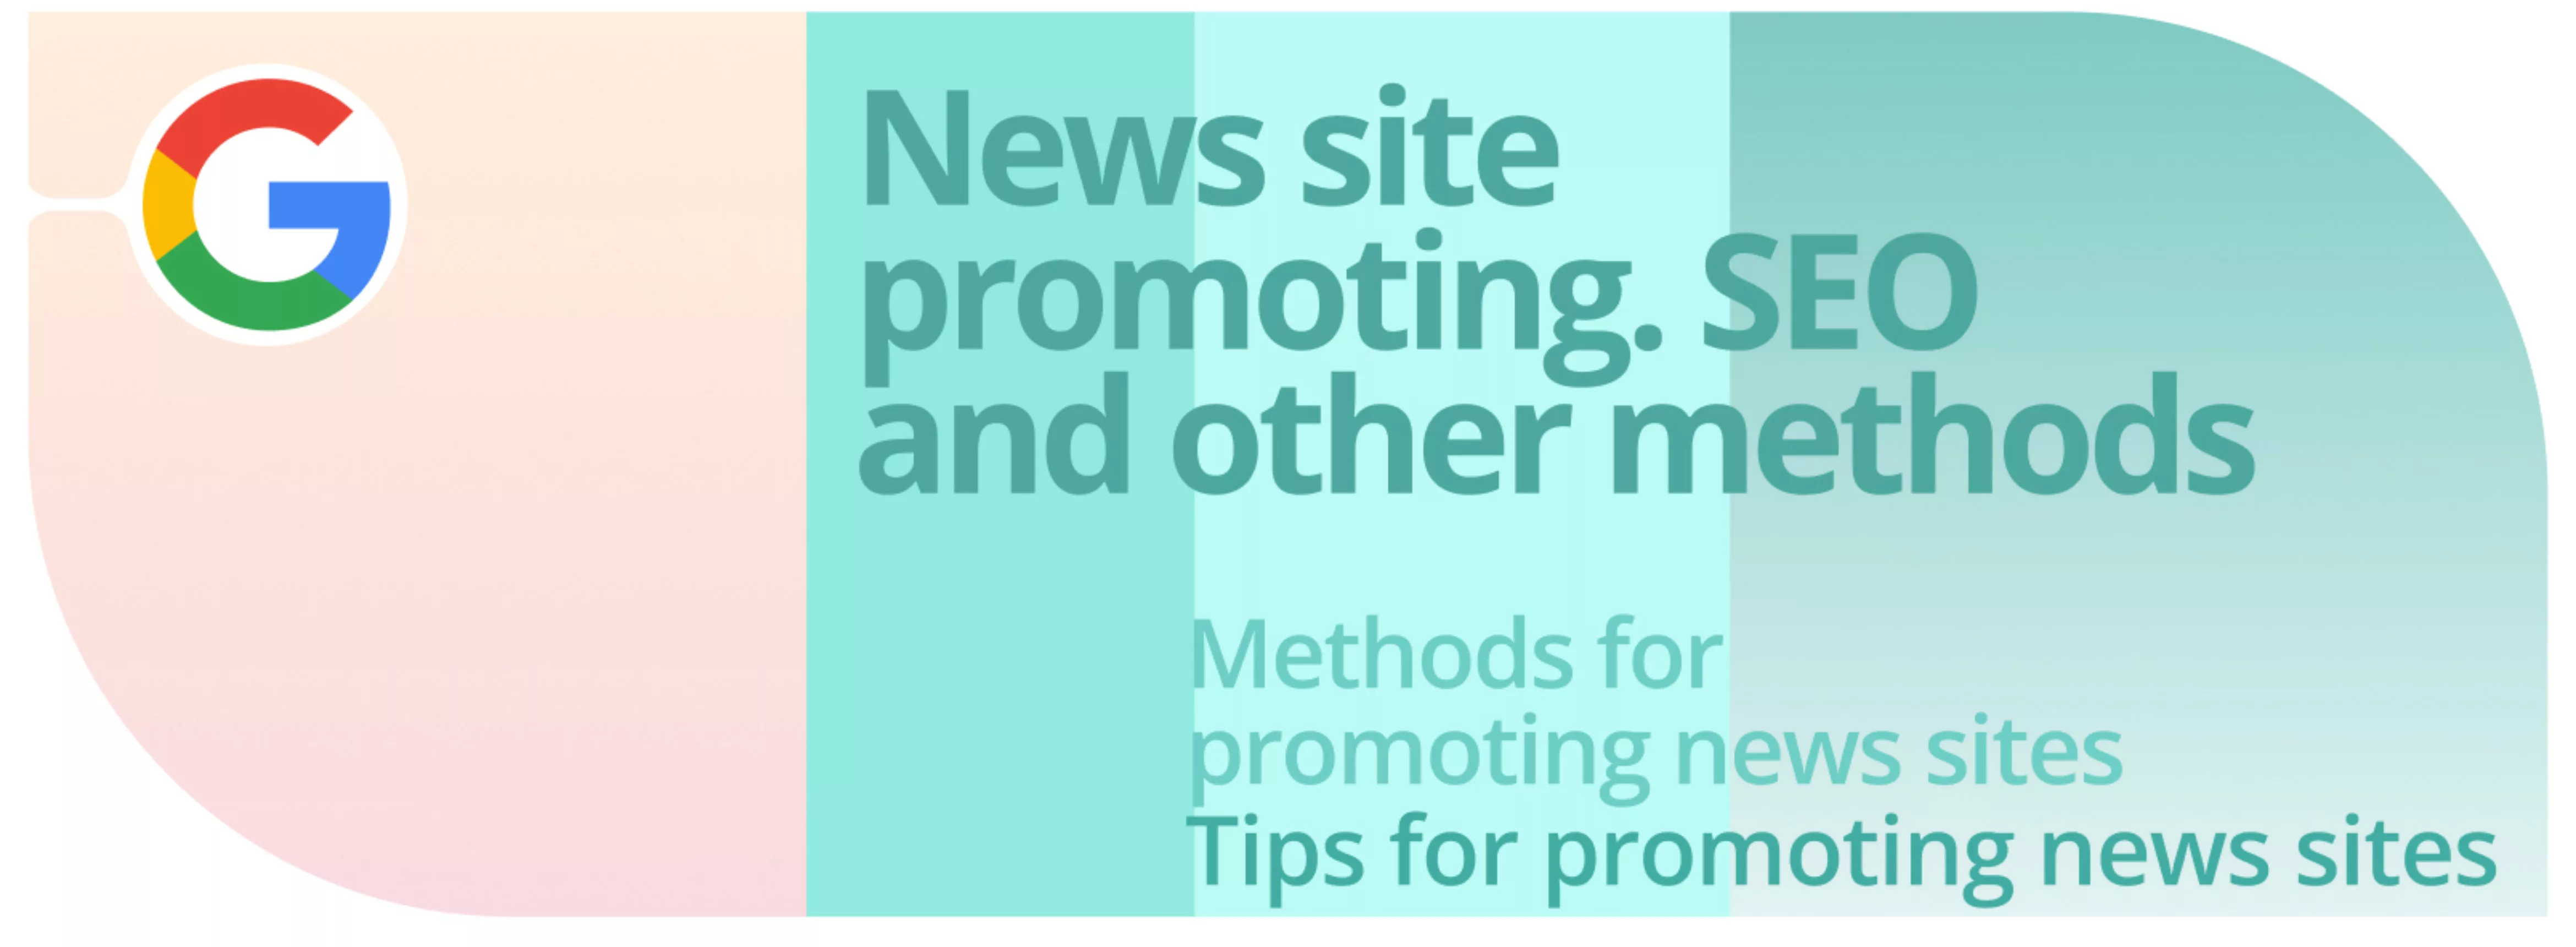 Promotion des sites d’information. SEO et autres méthodes